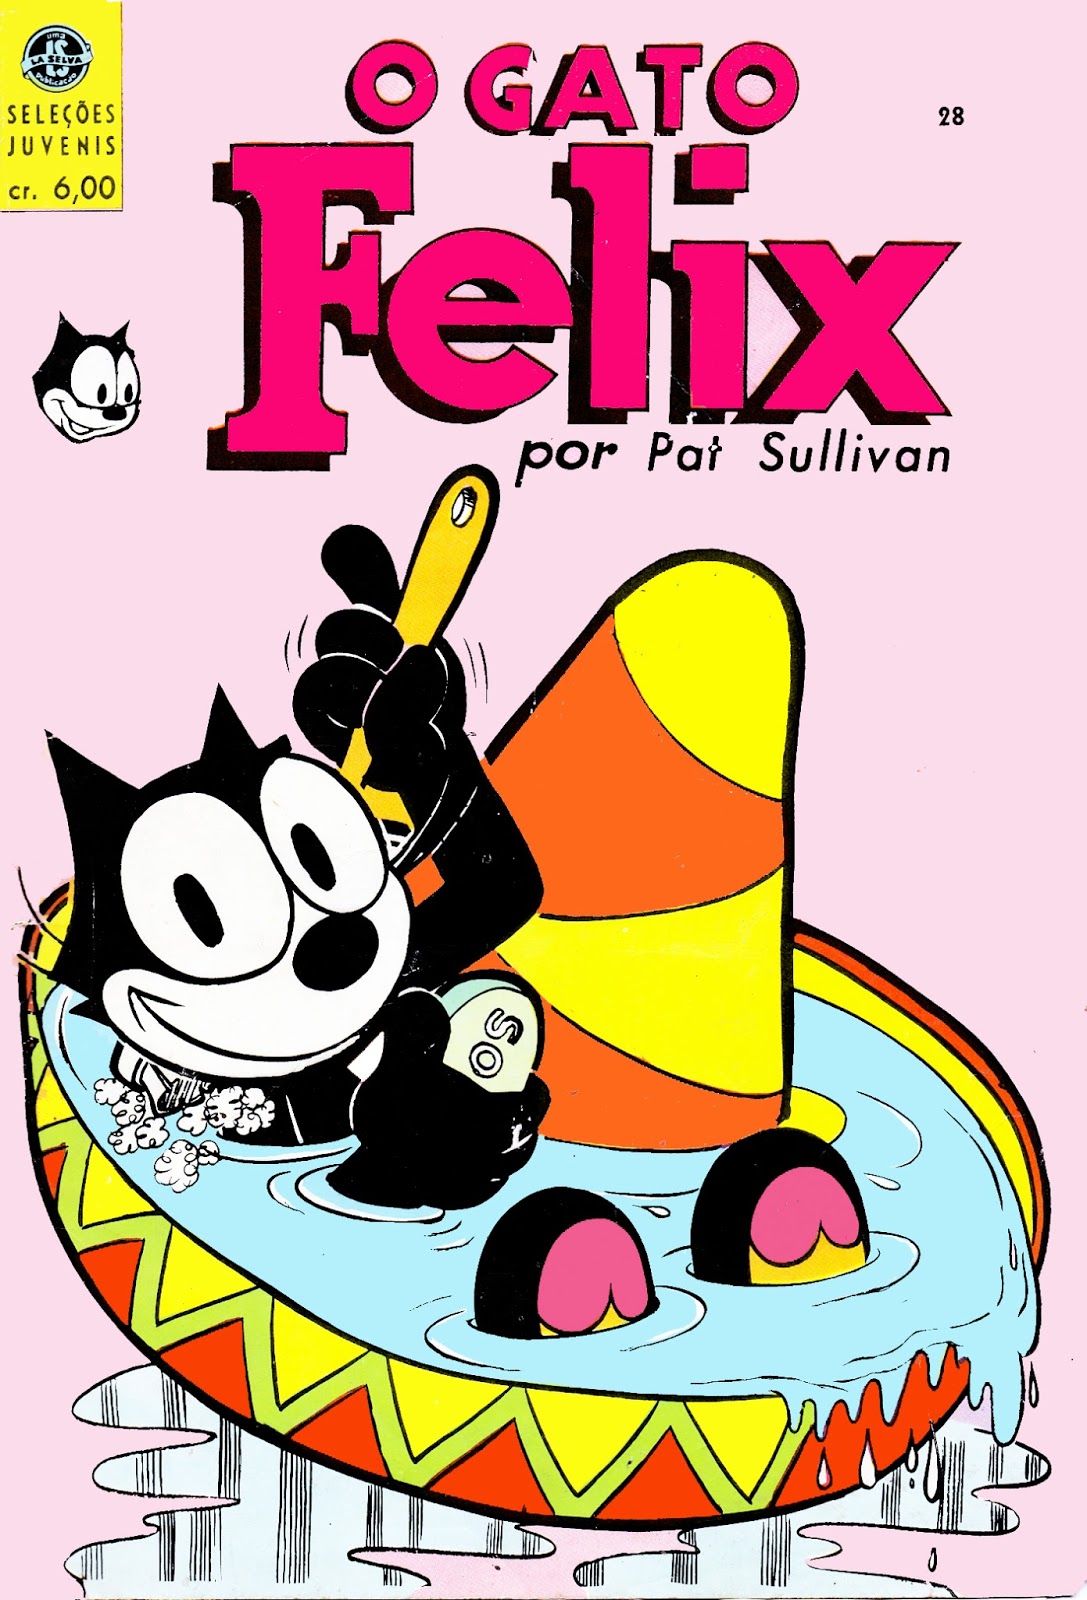 Conheça o Gato Félix  Mania de Gibi:Gibis, HQs, Revistas em quadrinhos e  muito mais!